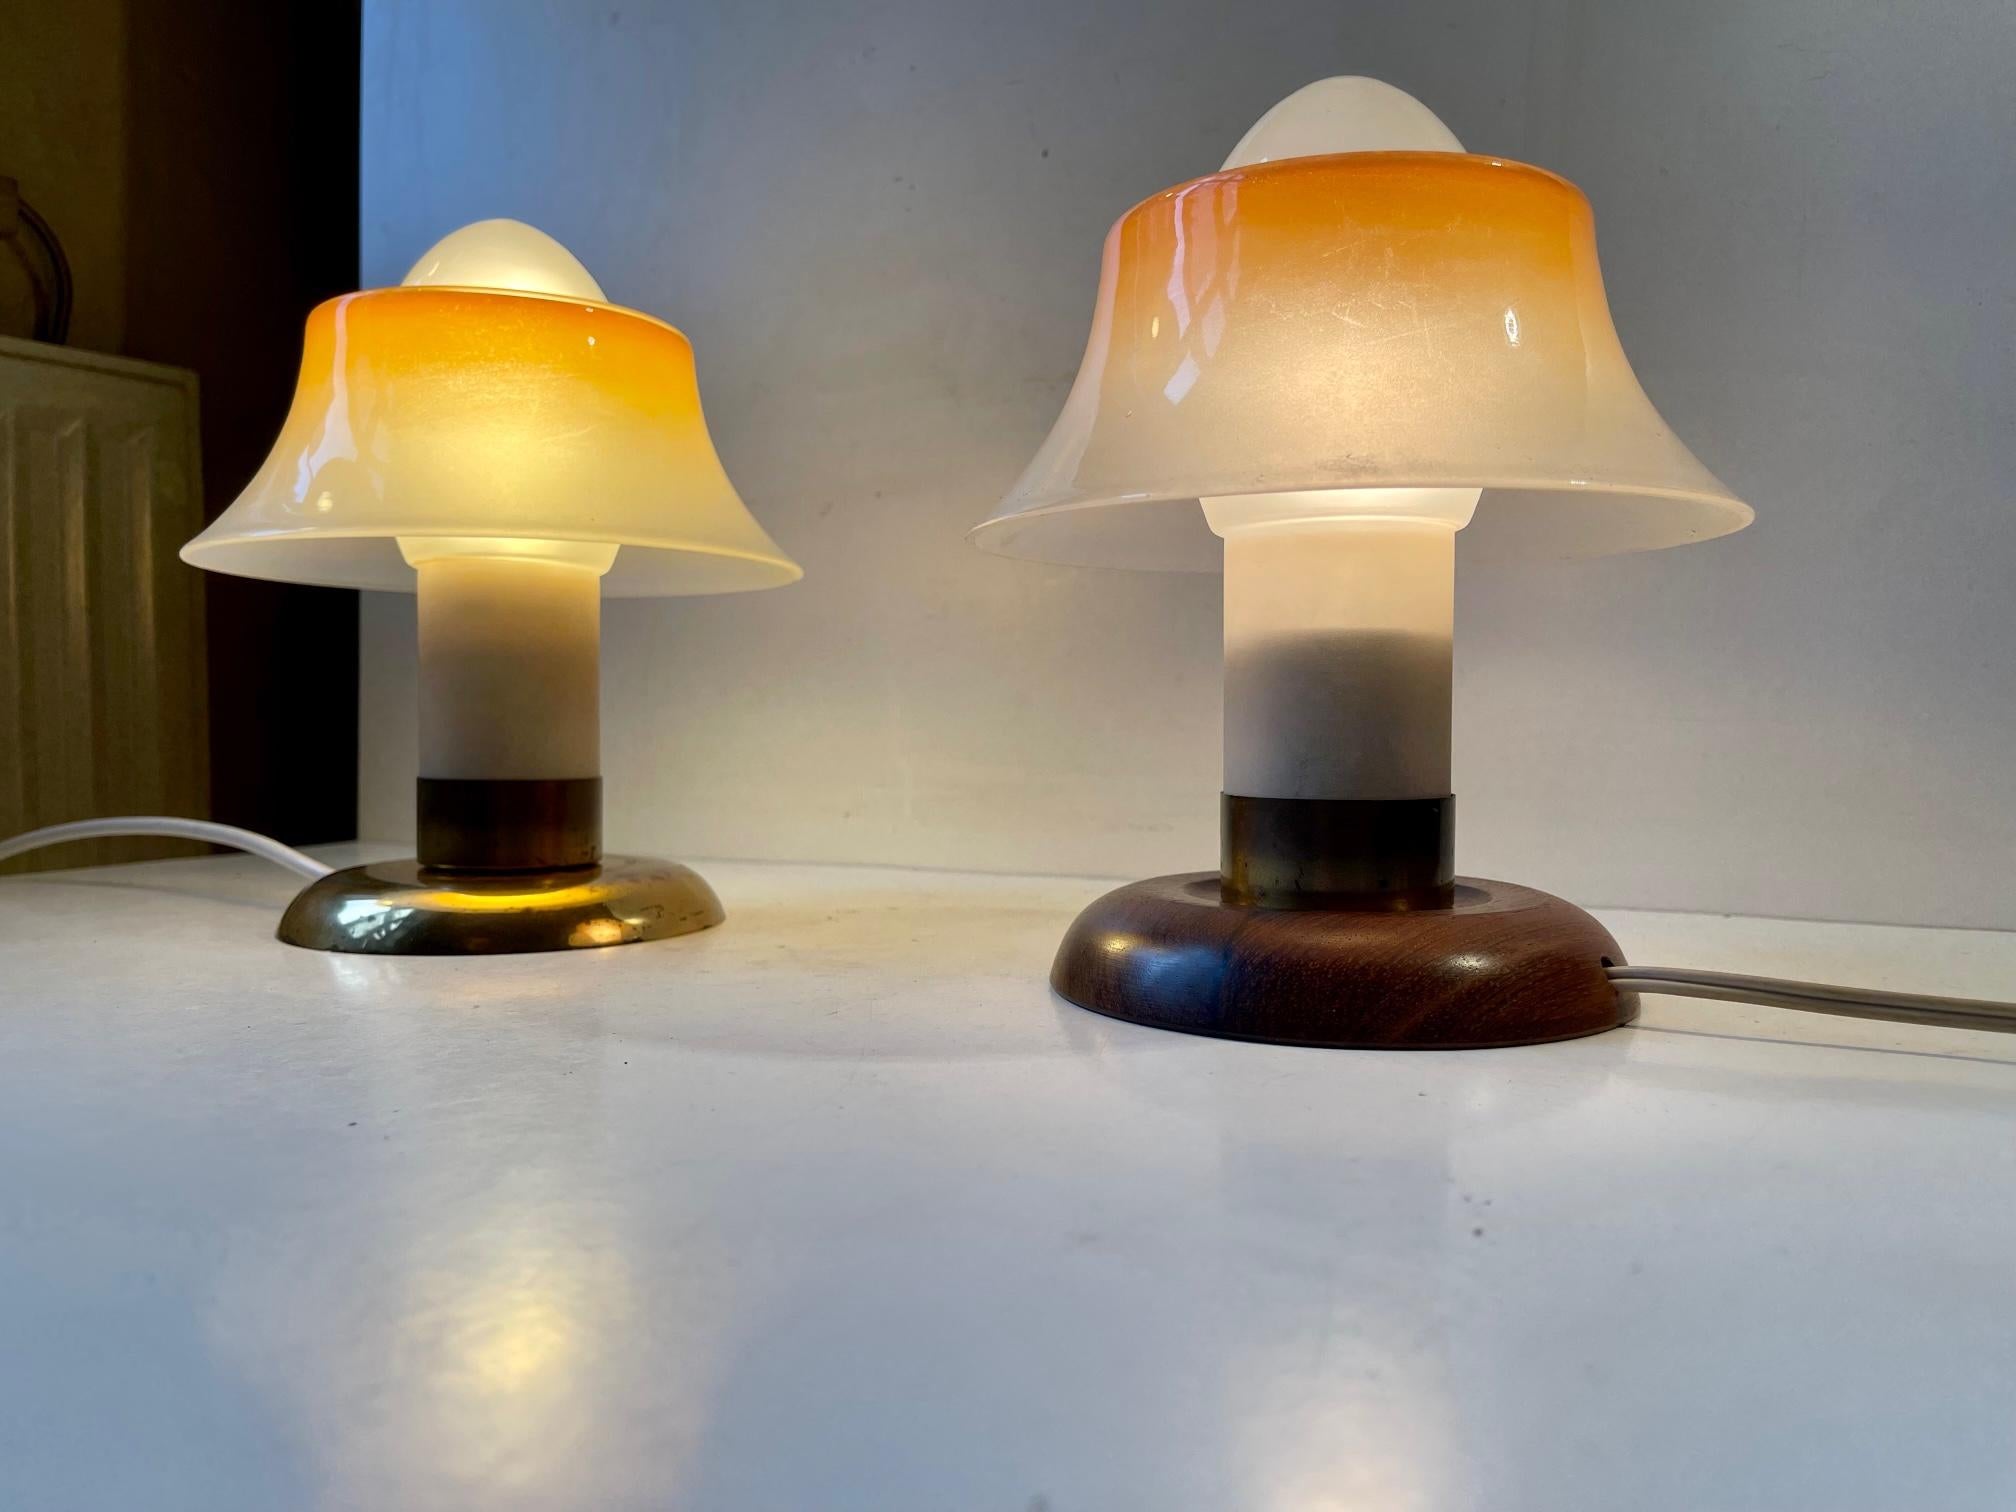 Fog & Mørup Small Fried-Egg Table Lamps, Denmark 1950s For Sale 1